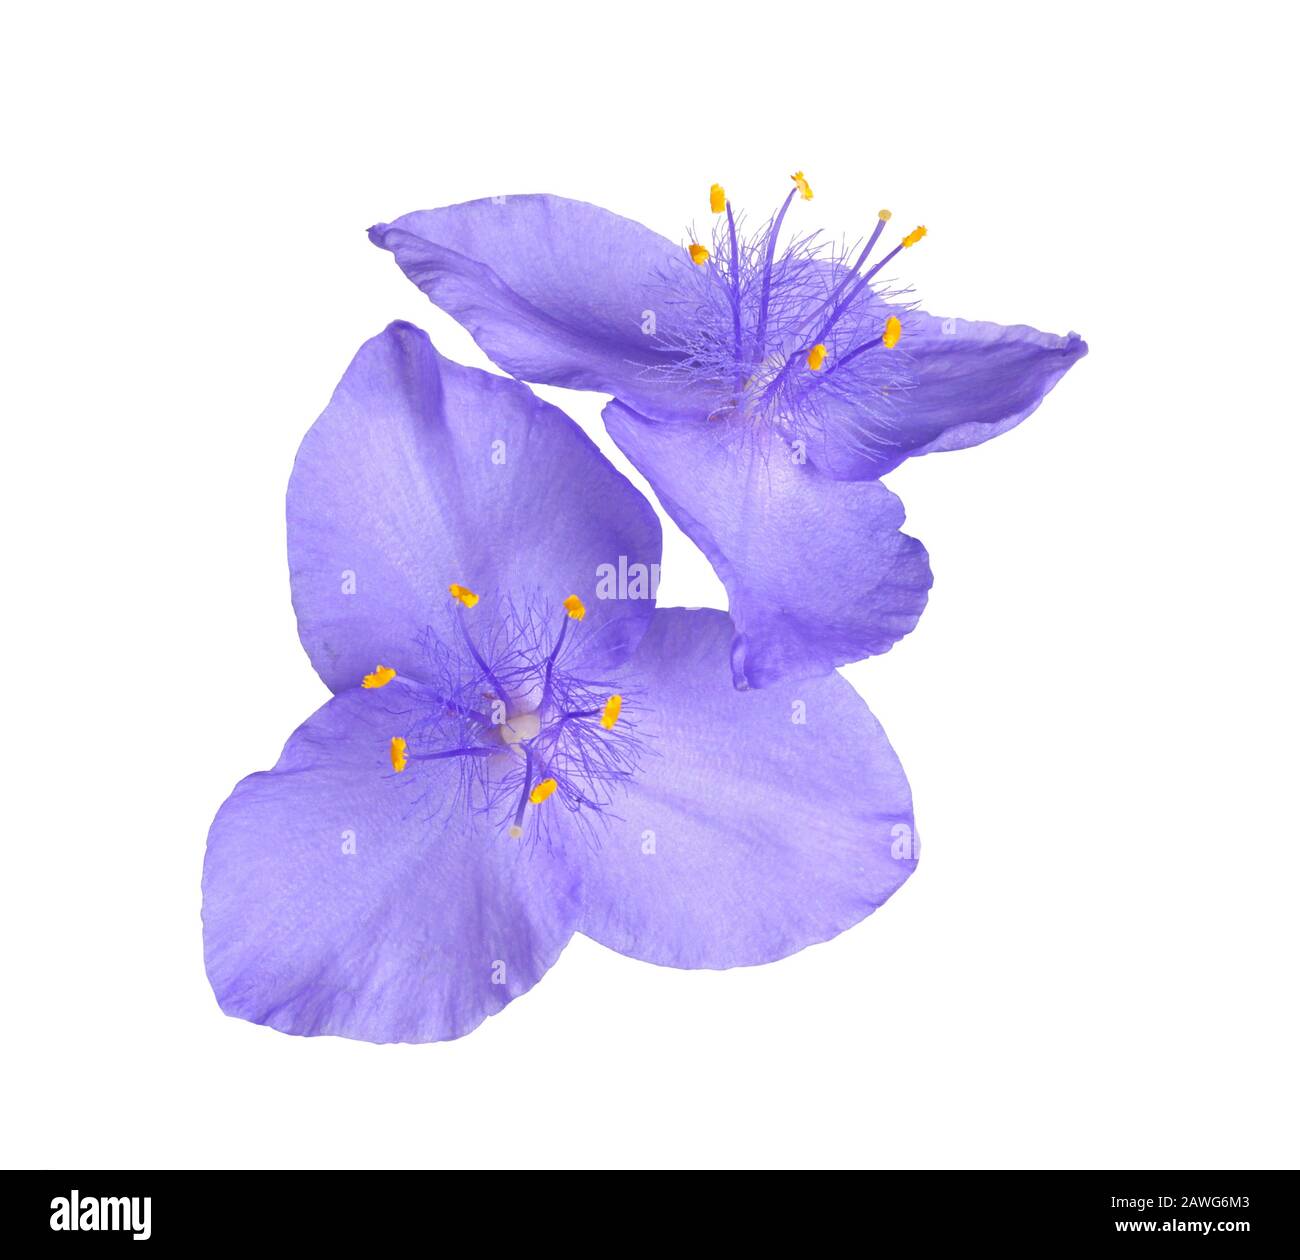 Zwei violette Blumen des nordamerikanischen, mehrjährigen Pflanzenspießworts (wahrscheinlich eine Hybride, an der Tradescantia virginiana und T. ohiensis beteiligt sind) sind isola Stockfoto